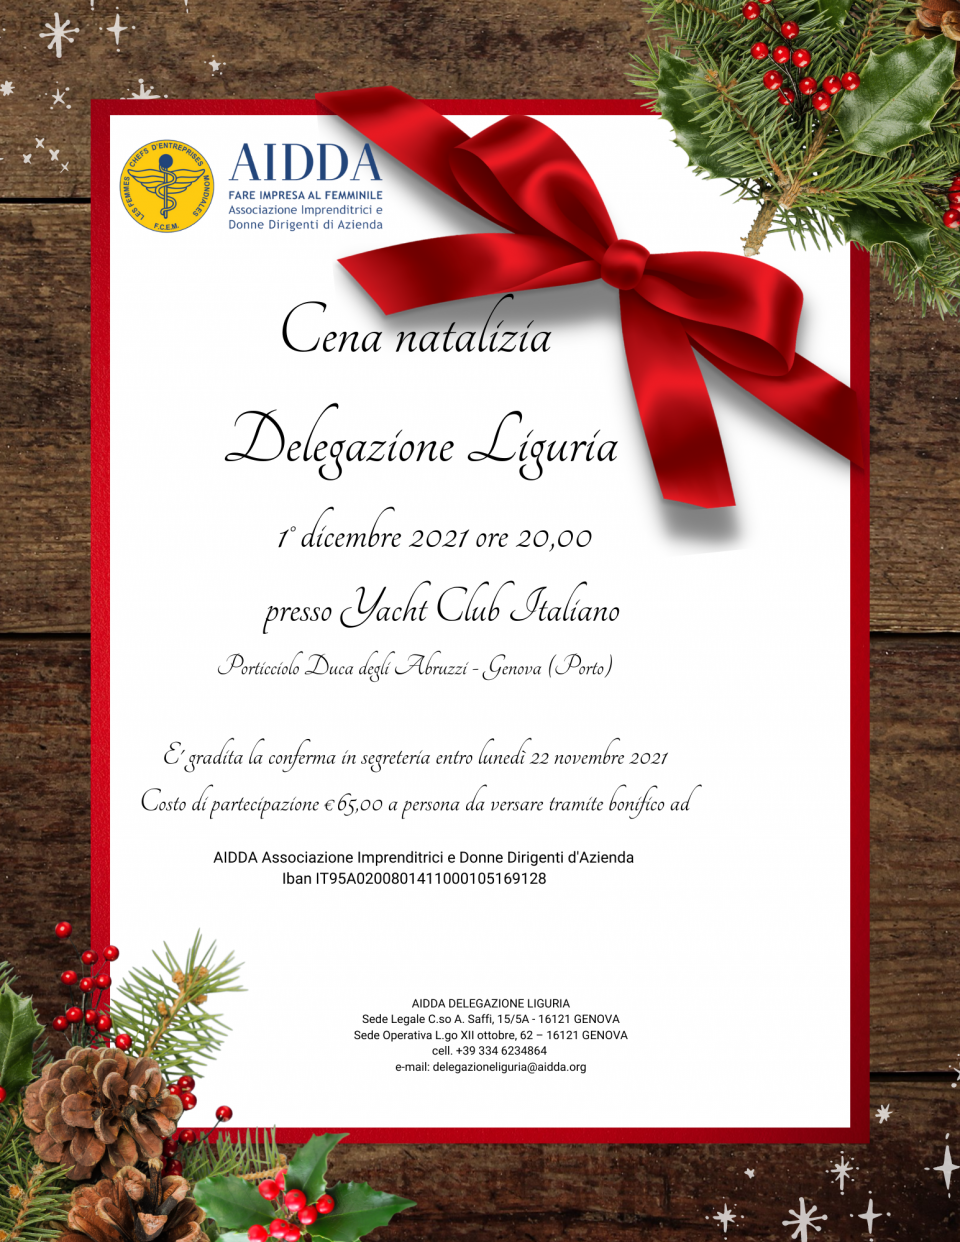 AIDDA Liguria Invito Cena Natalizia.jpg